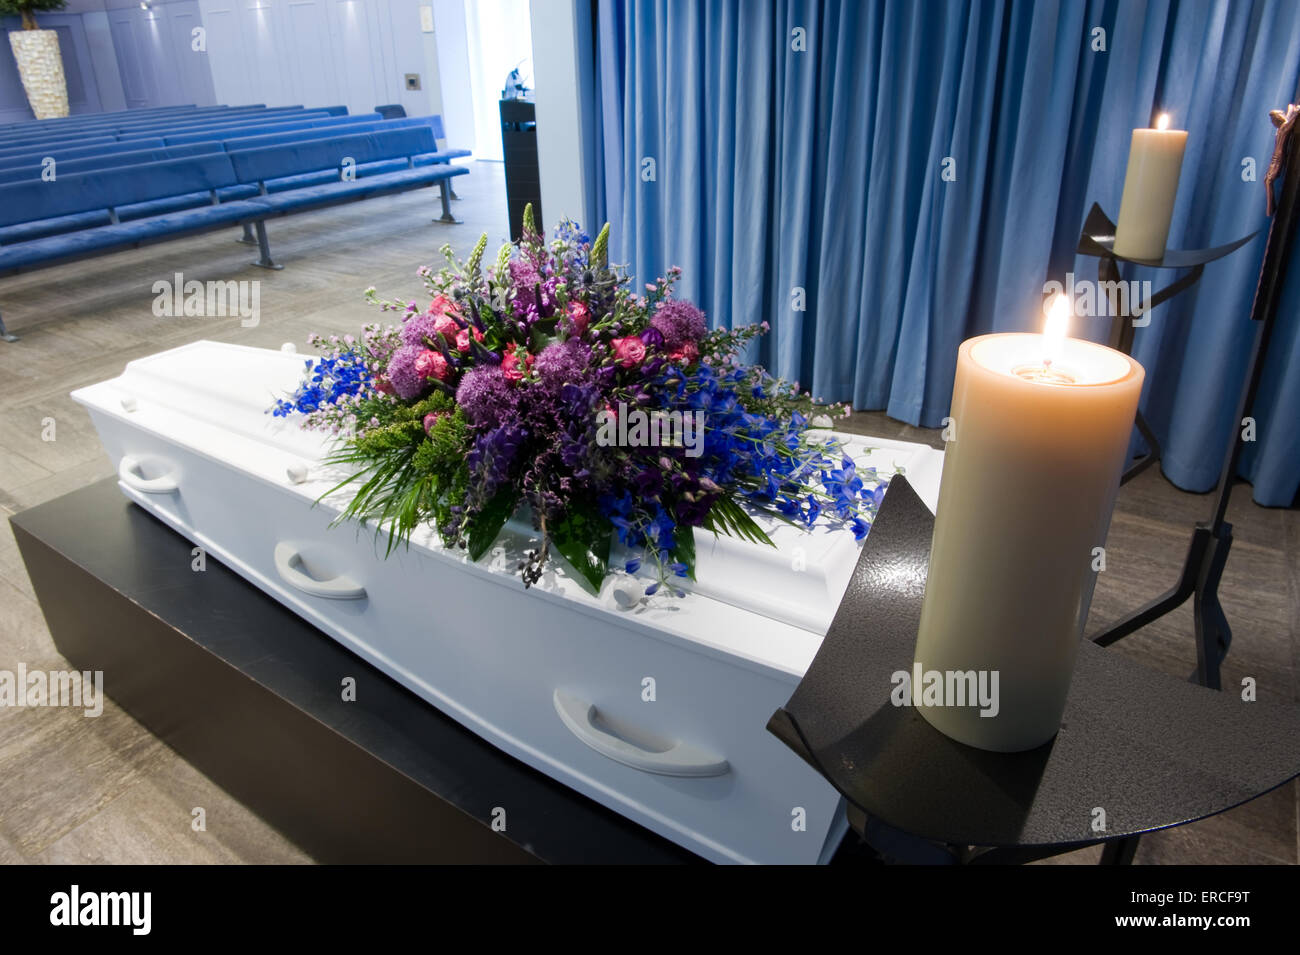 Una bara con un omaggio floreale in un obitorio con due candele accese Foto Stock